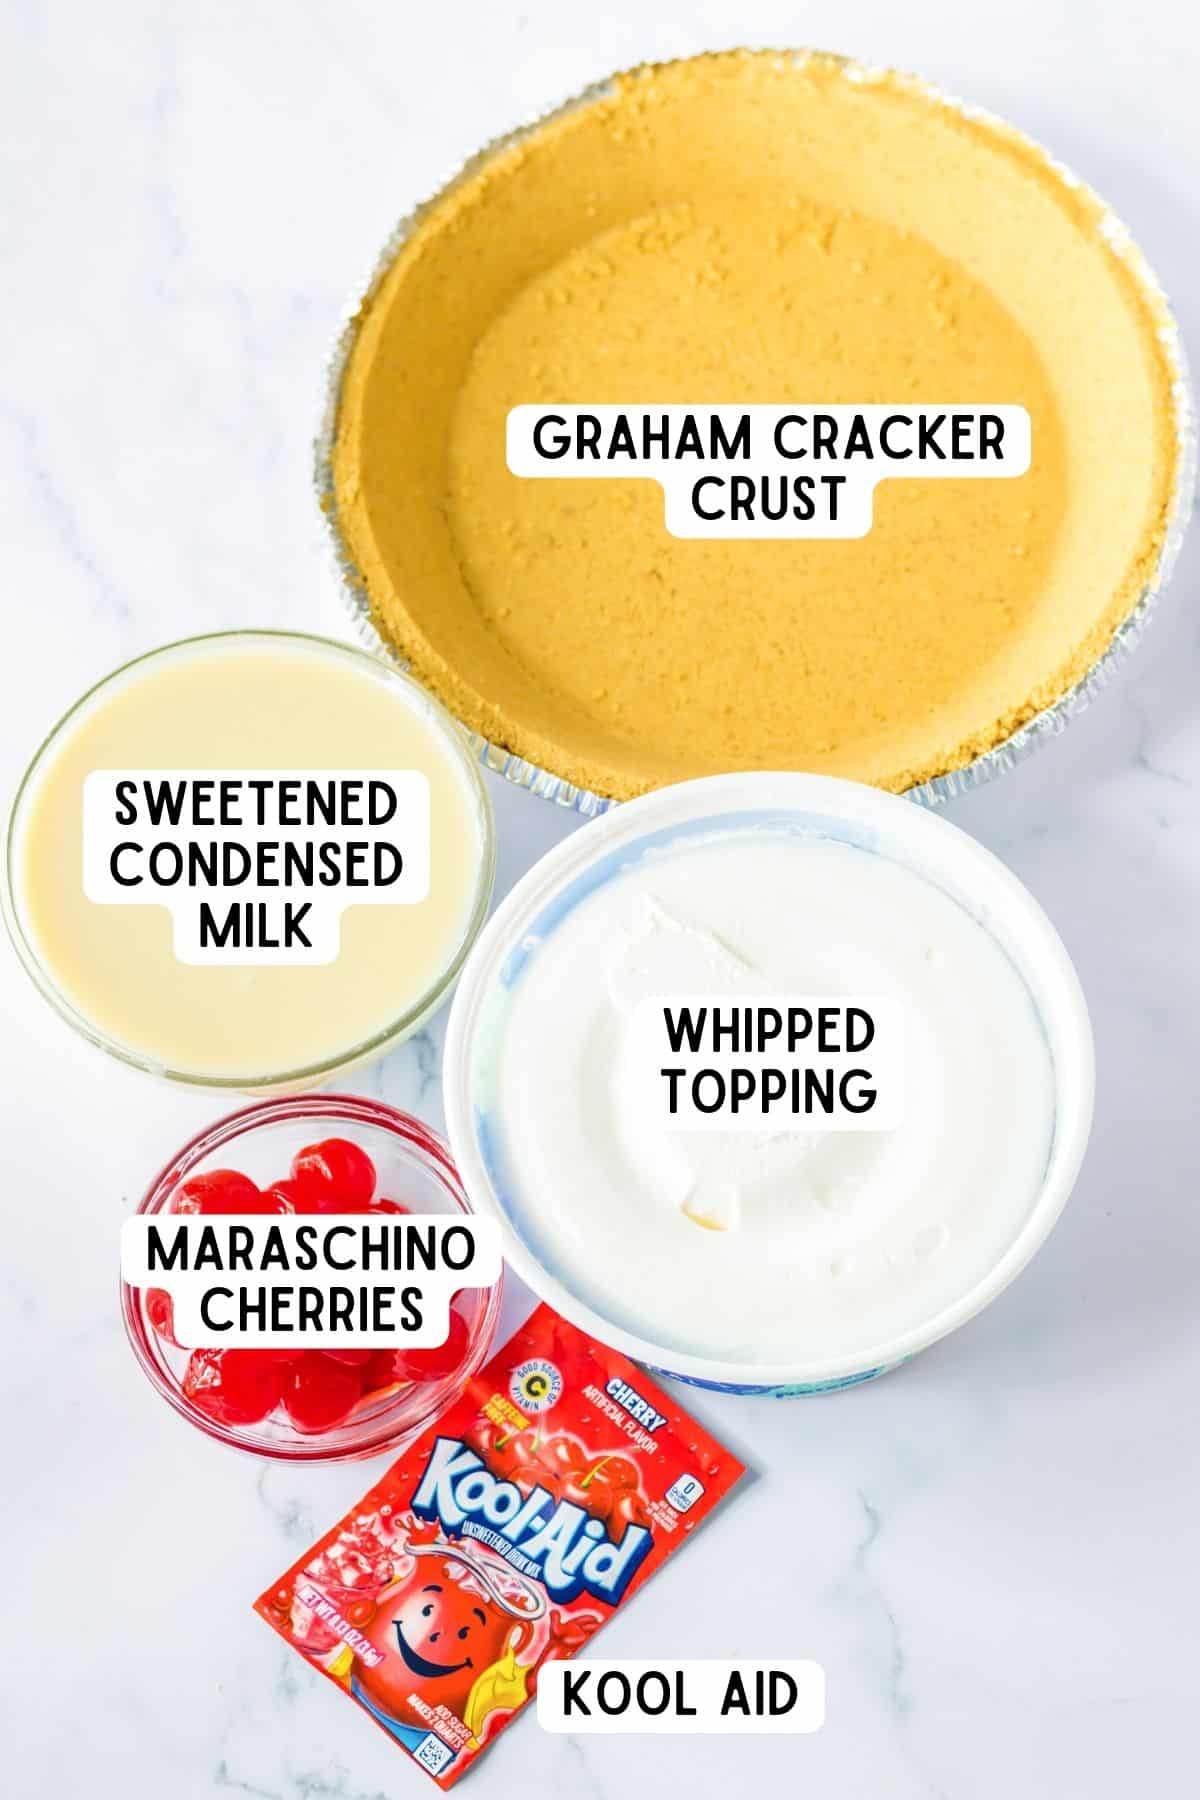 Graham cracker pie crust, sweetened condensed milk, whipped topping, maraschino cherries and packet of kool aid.